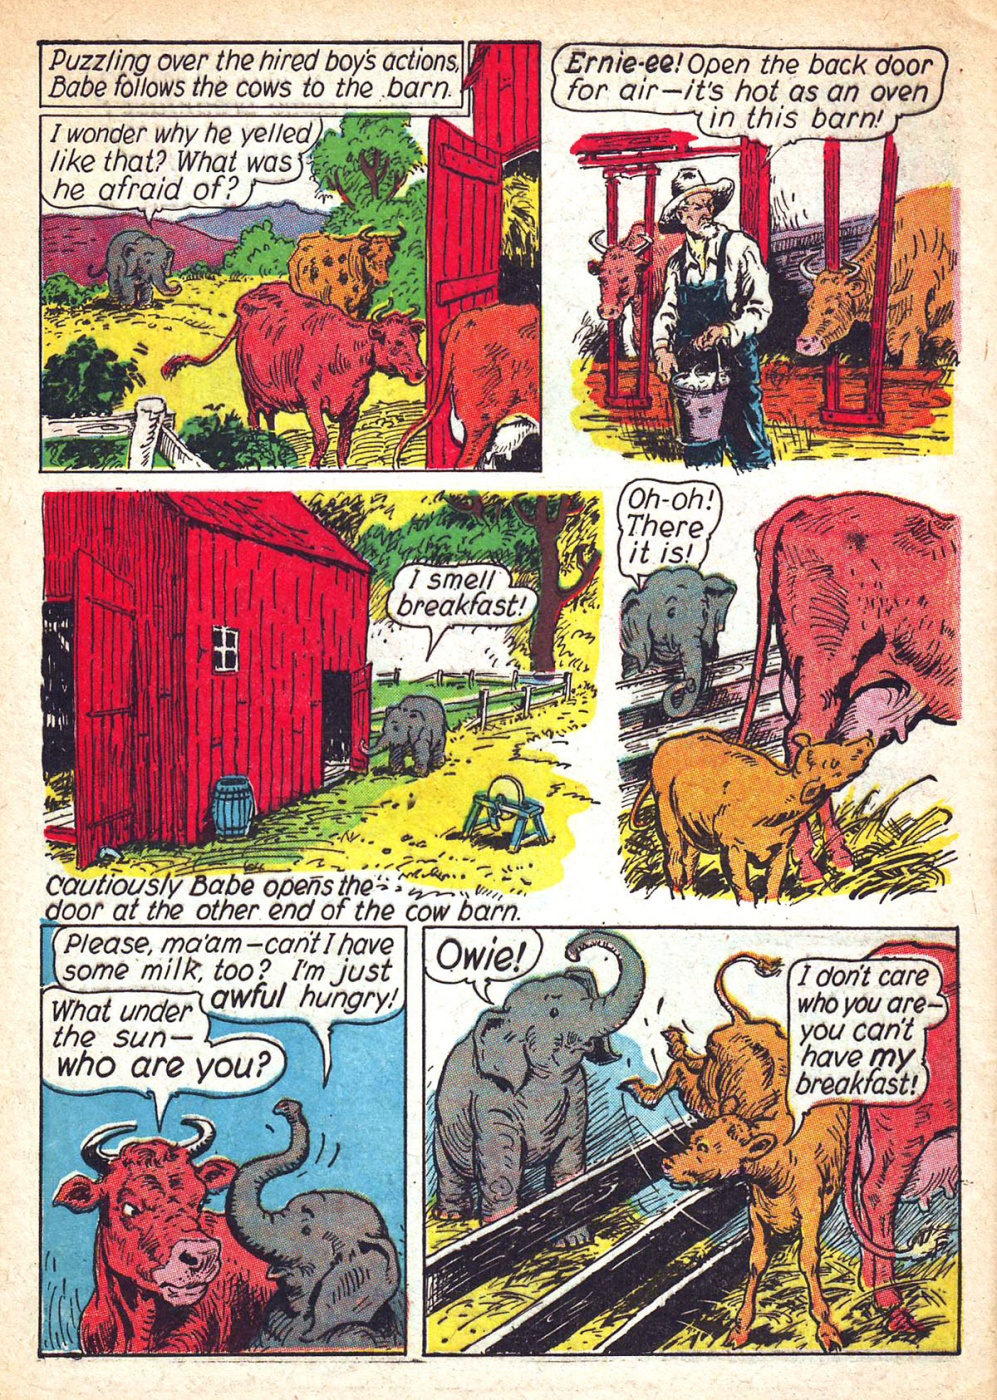 Funny Animal Comics (60)